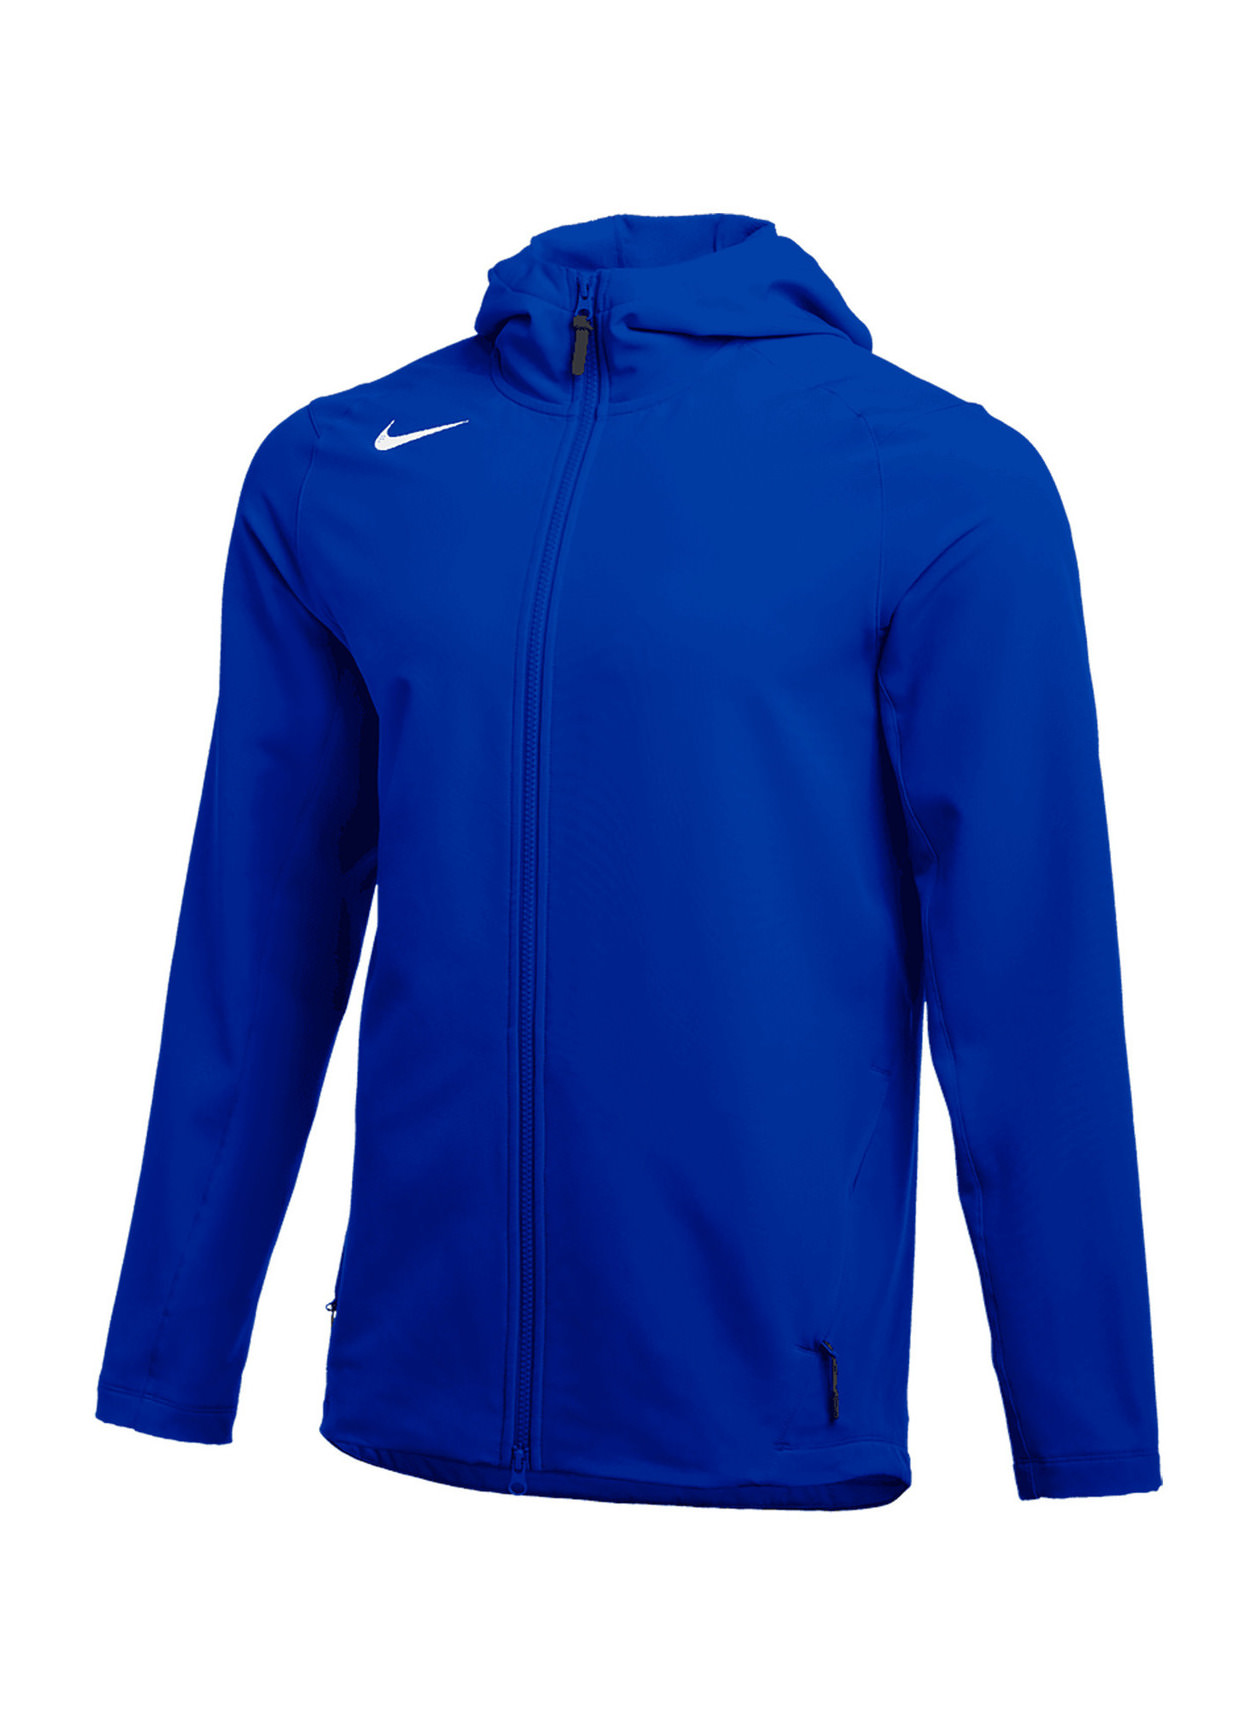 Nike Men's Team Royal / White Full Zip Heavy Jacket